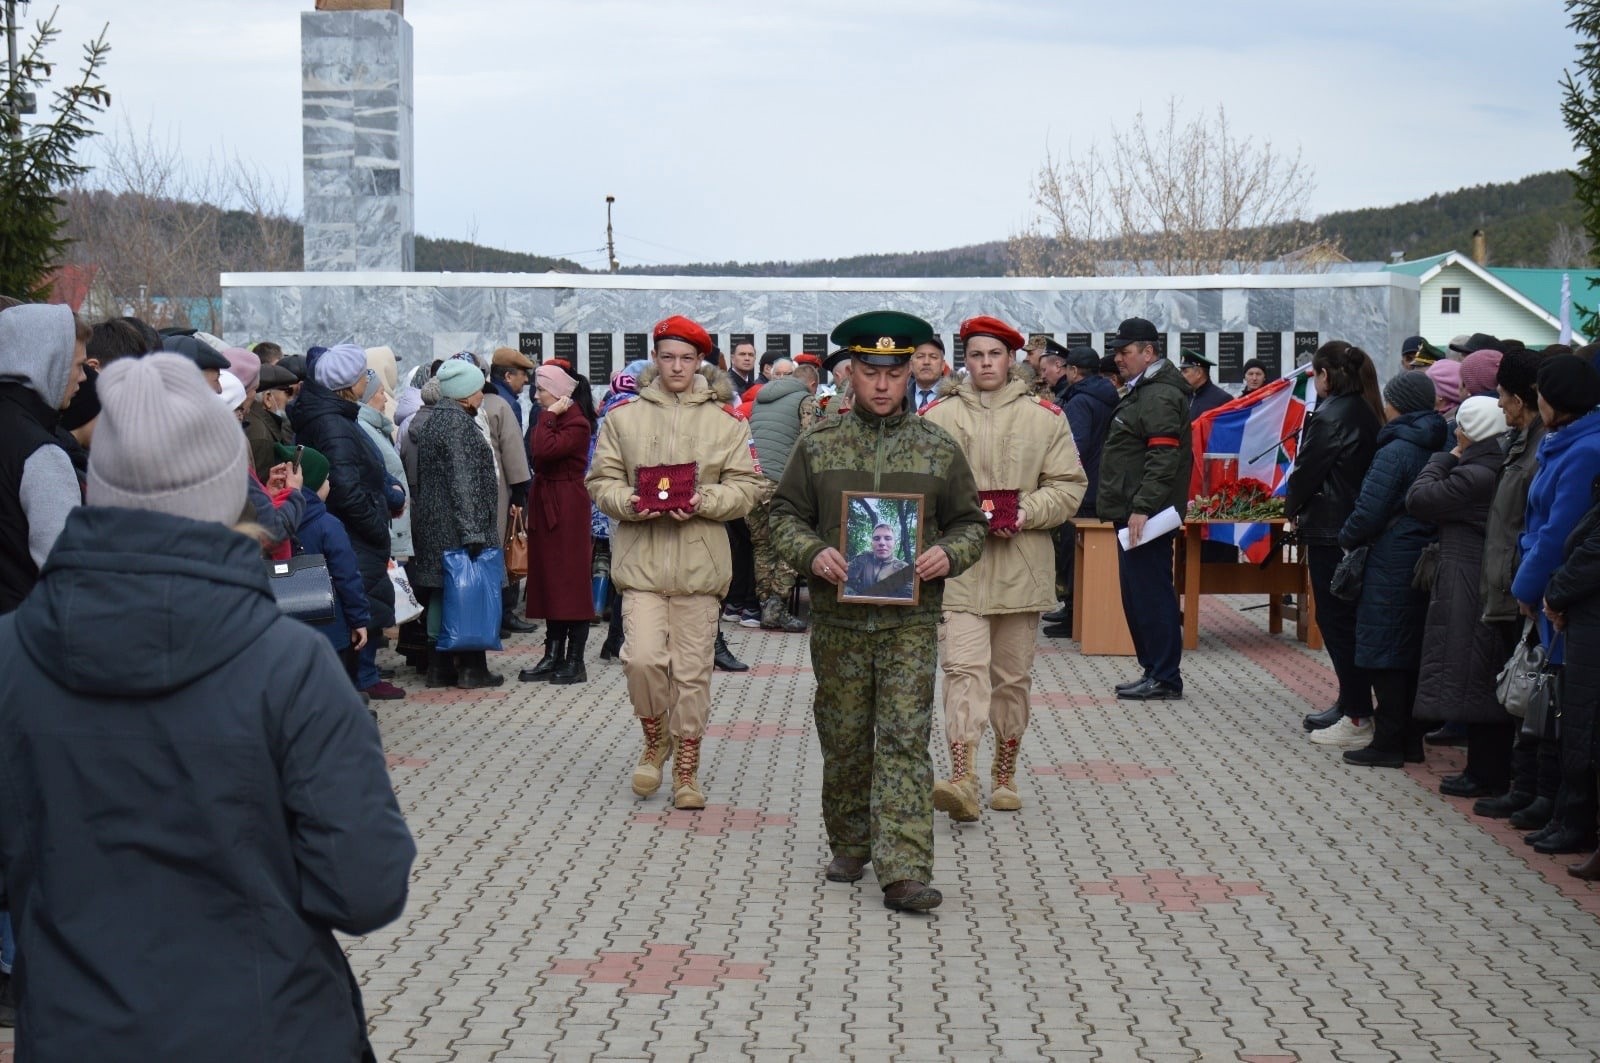 Новости башкирии сегодня свежие события. В Караиделе простились погибшим солдатом. Парад в Караиделе.